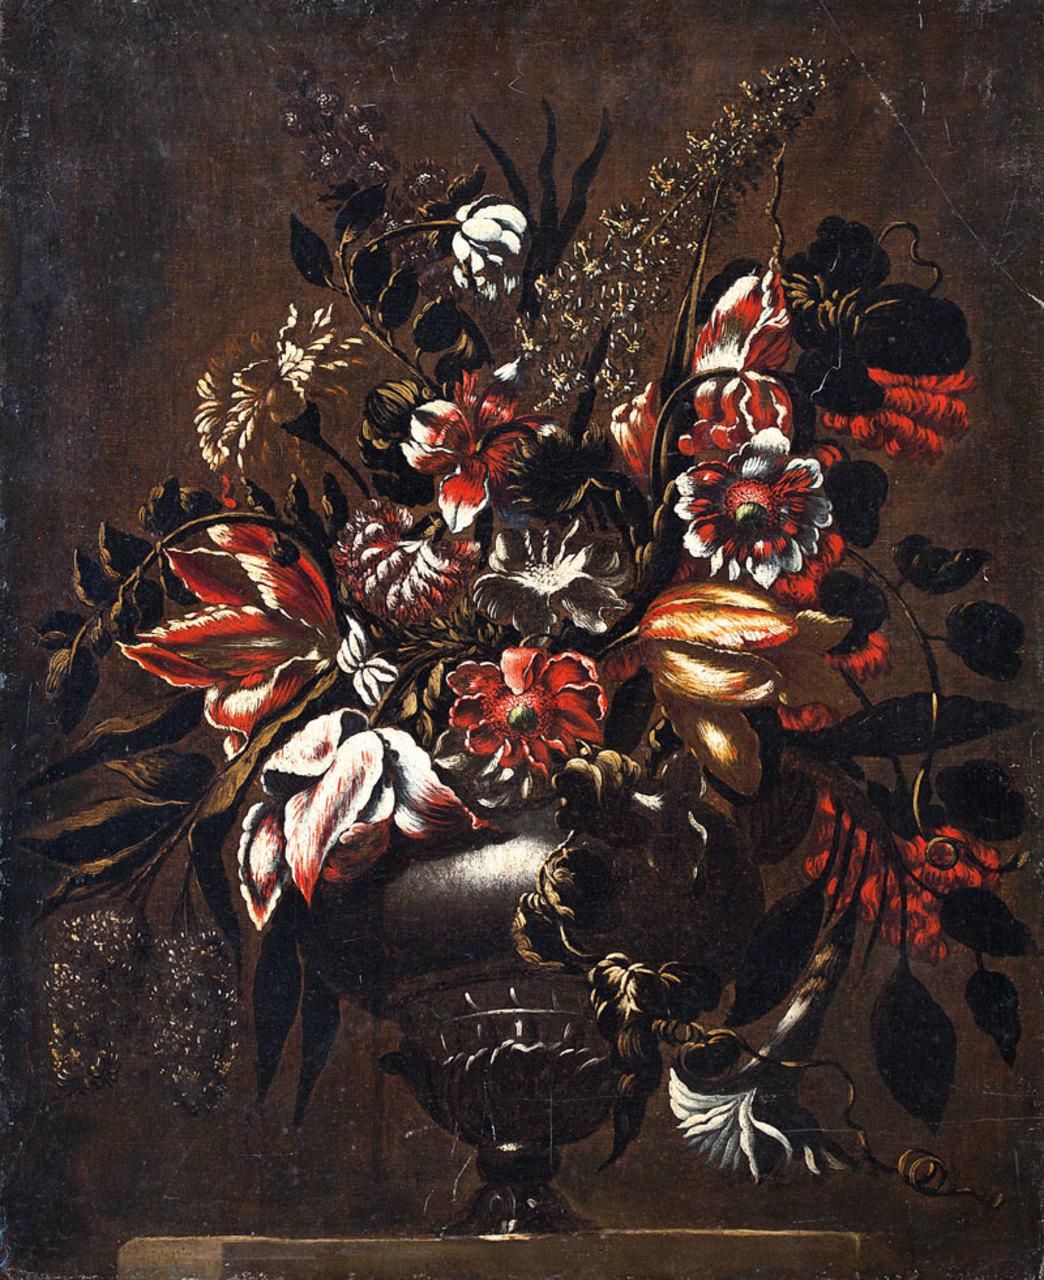 ESCUELA ESPAÑOLA, Fns. S. XVII Vase with flowers
Oil on canvas
75 x 62 cm.